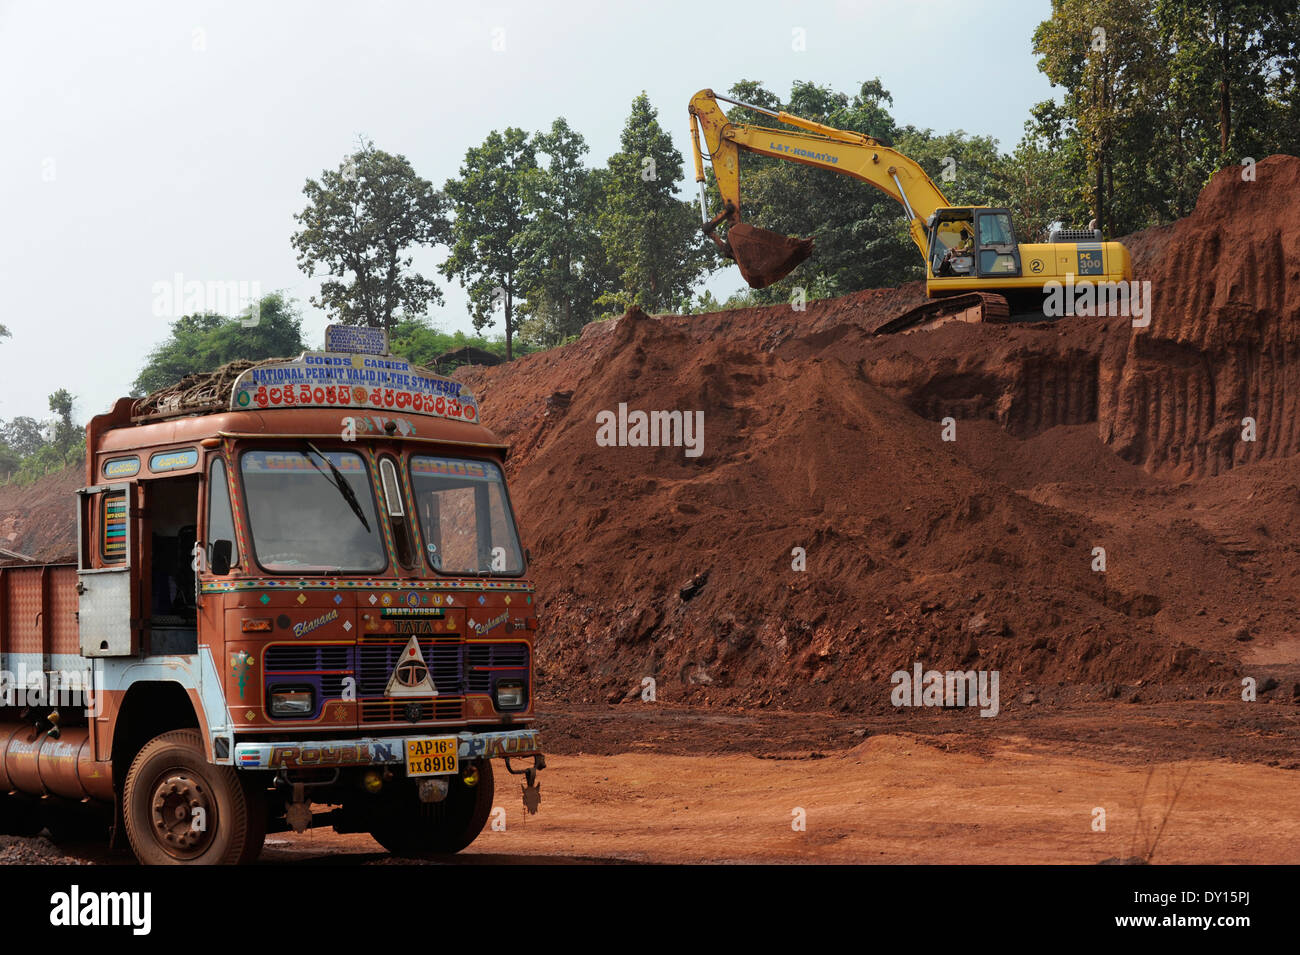 Le Jharkhand EN INDE Noamundi , le minerai de fer pour l'exploitation minière à ciel ouvert, et Tata Steel Banque D'Images